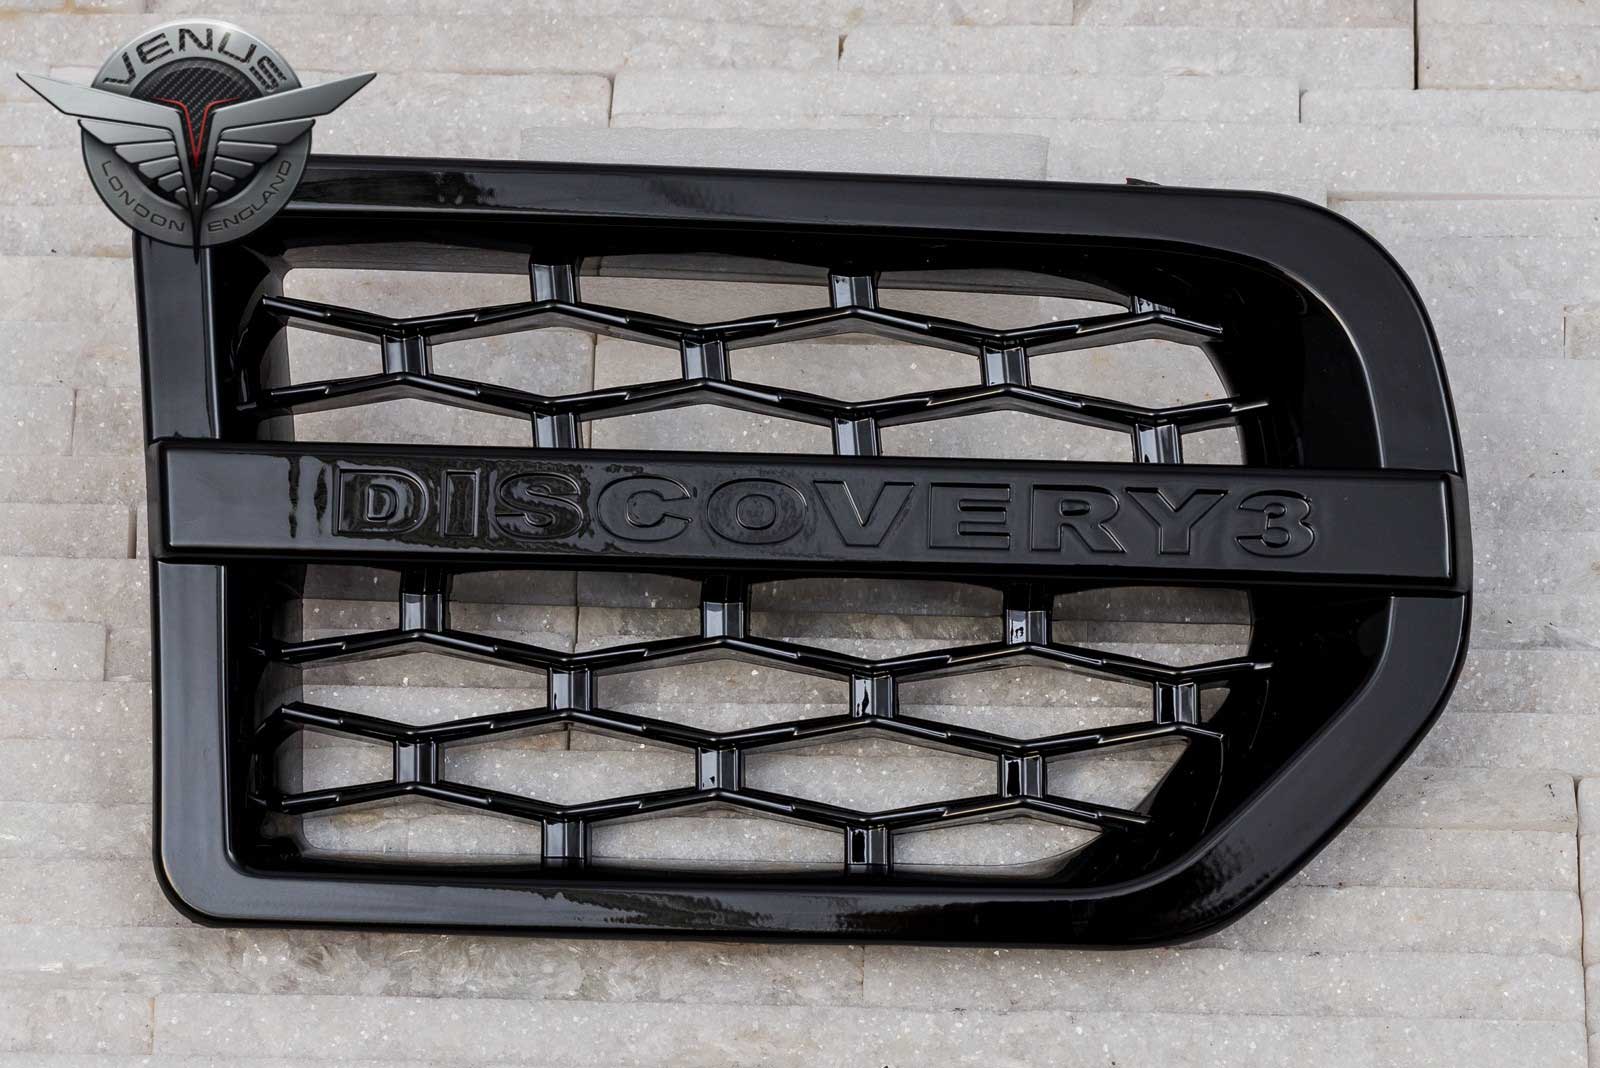 Воздухозаборник Land Rover Discovery 3 (черный) 1 шт